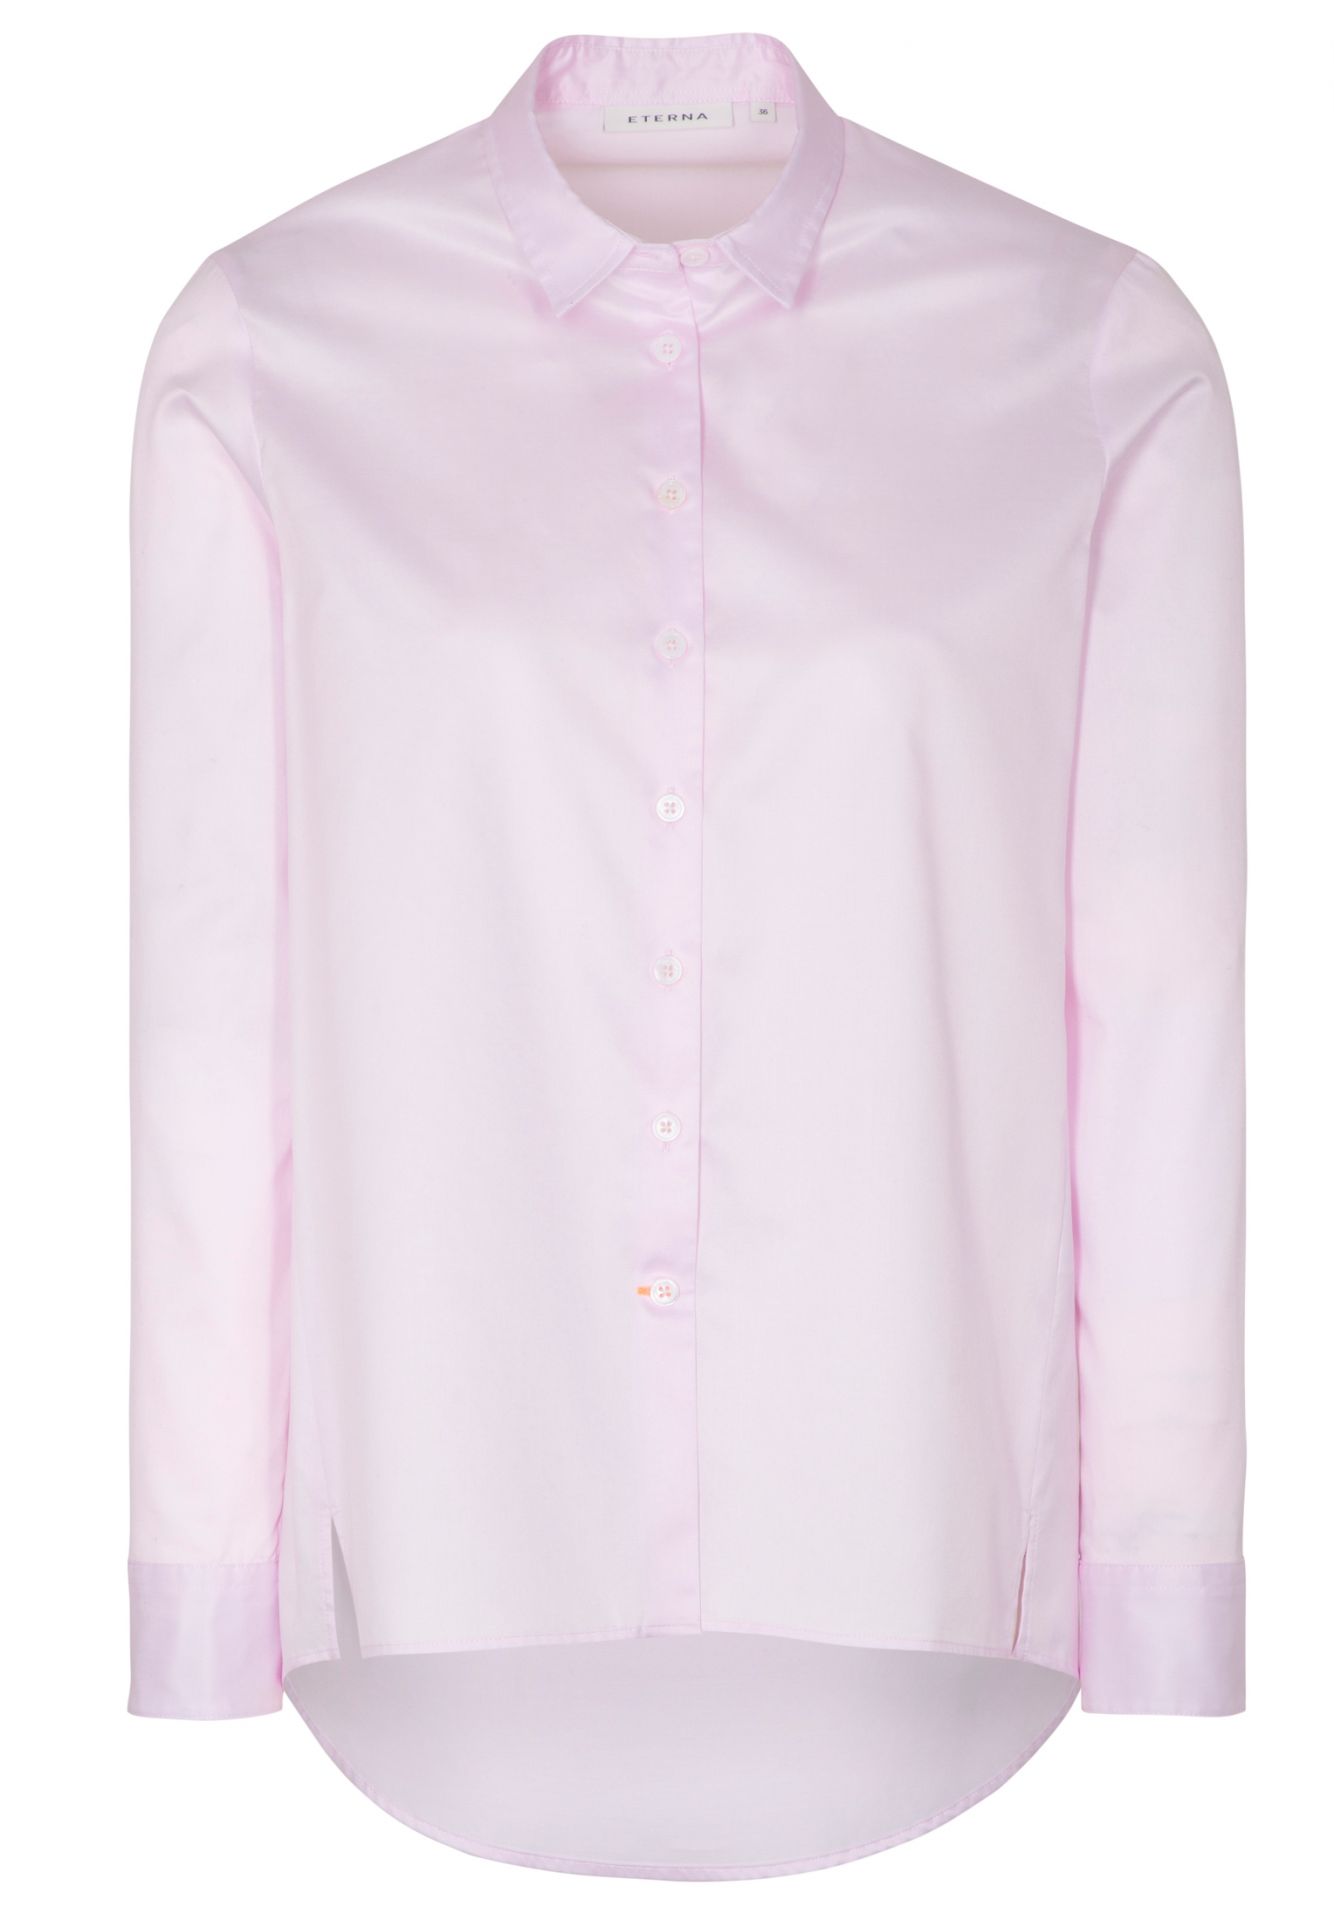 ART® Eterna® Fit 63 Bluse Fit LUXURY Hemd-Kragen Lose 50 Rosa und SHIRT cotton besticken bedrucken günstig | SOFT Loose cm